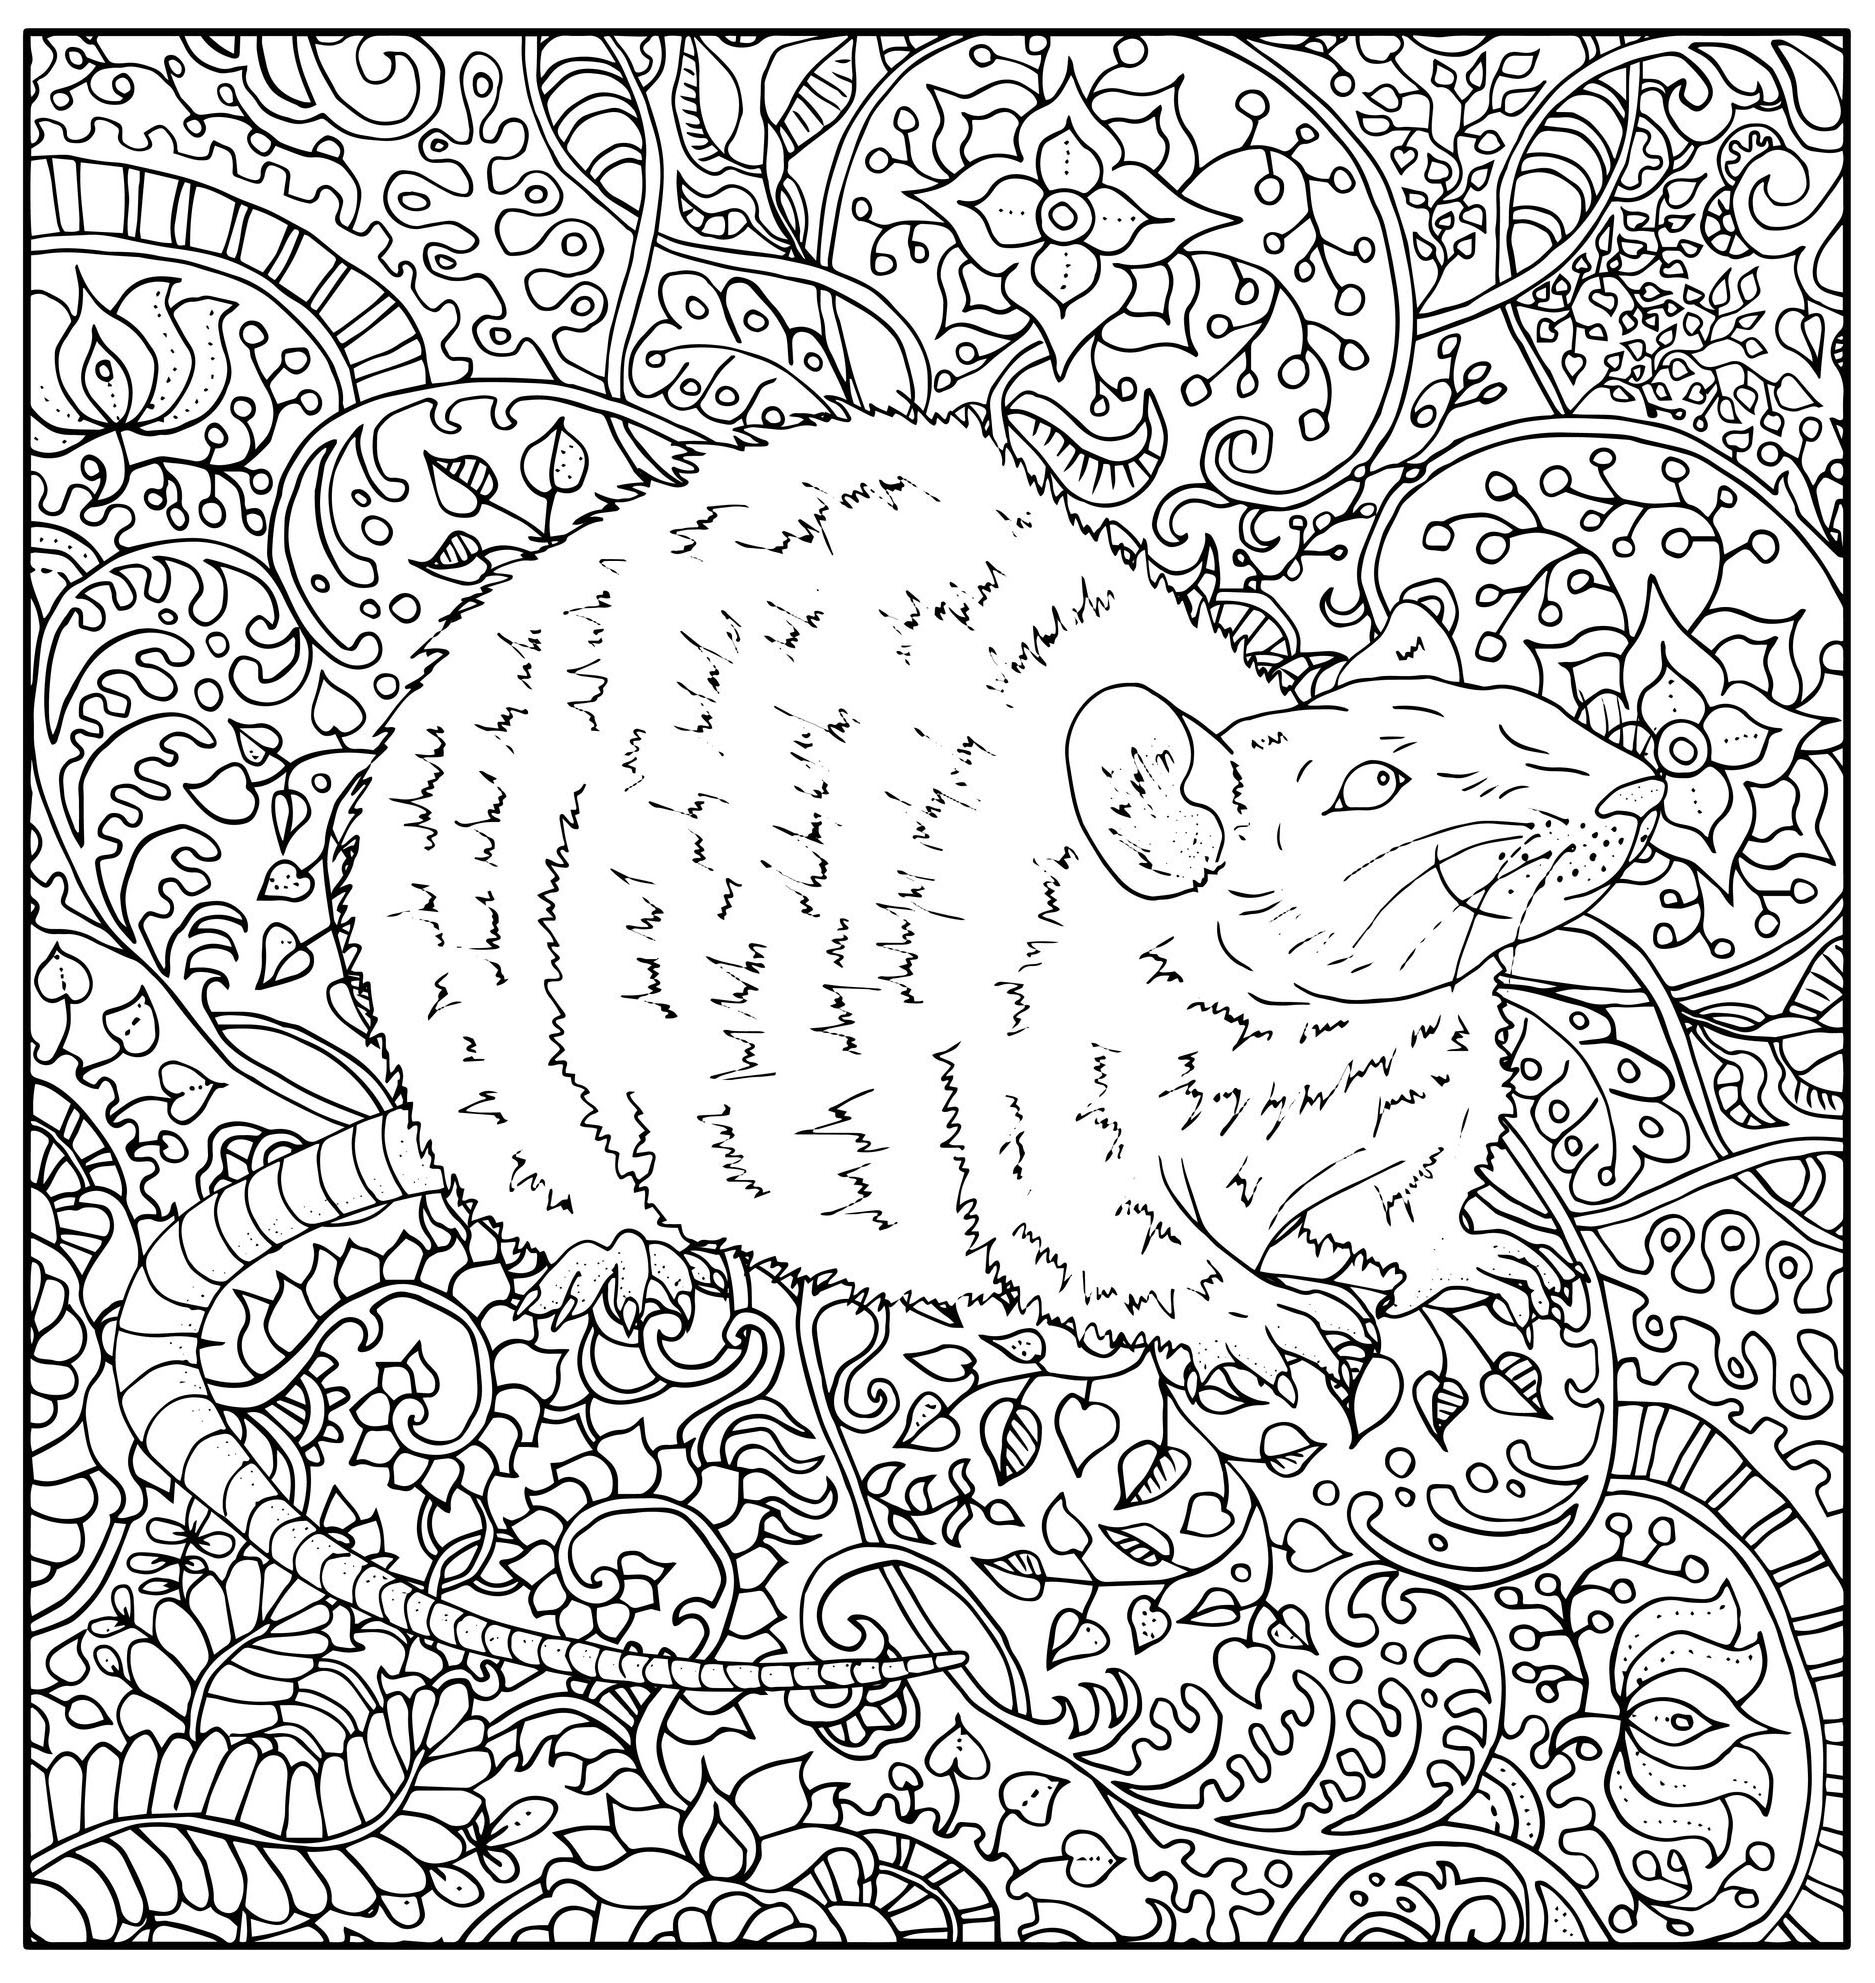 Pagina da colorare che rappresenta un ratto disegnato in modo realistico con vari motivi vegetali astratti, Fonte : 123rf   Artista : Vera Petruk